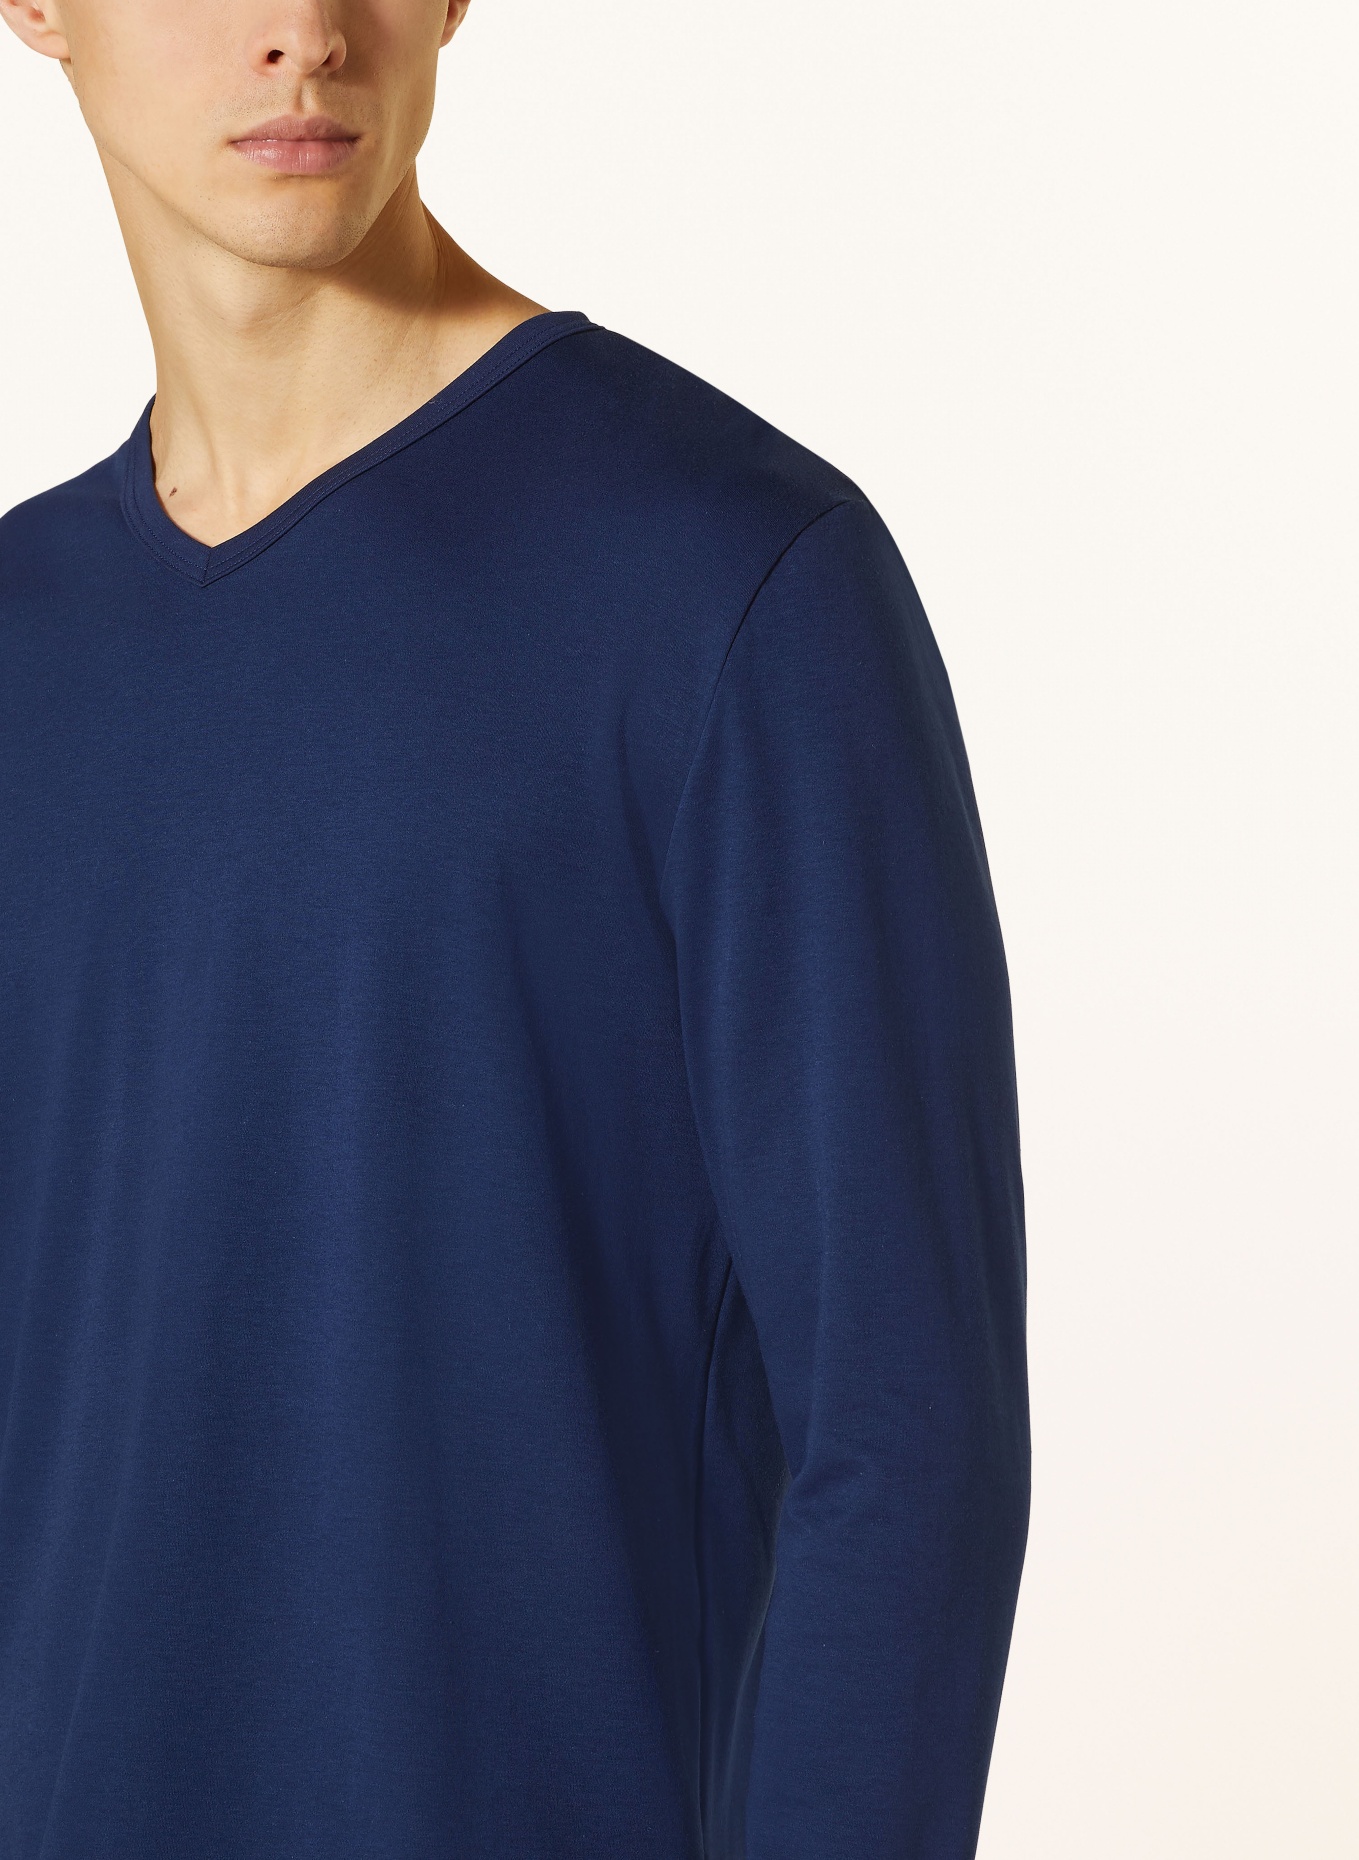 mey Pajama shirt series SOLID NIGHT, Color: DARK BLUE (Image 4)